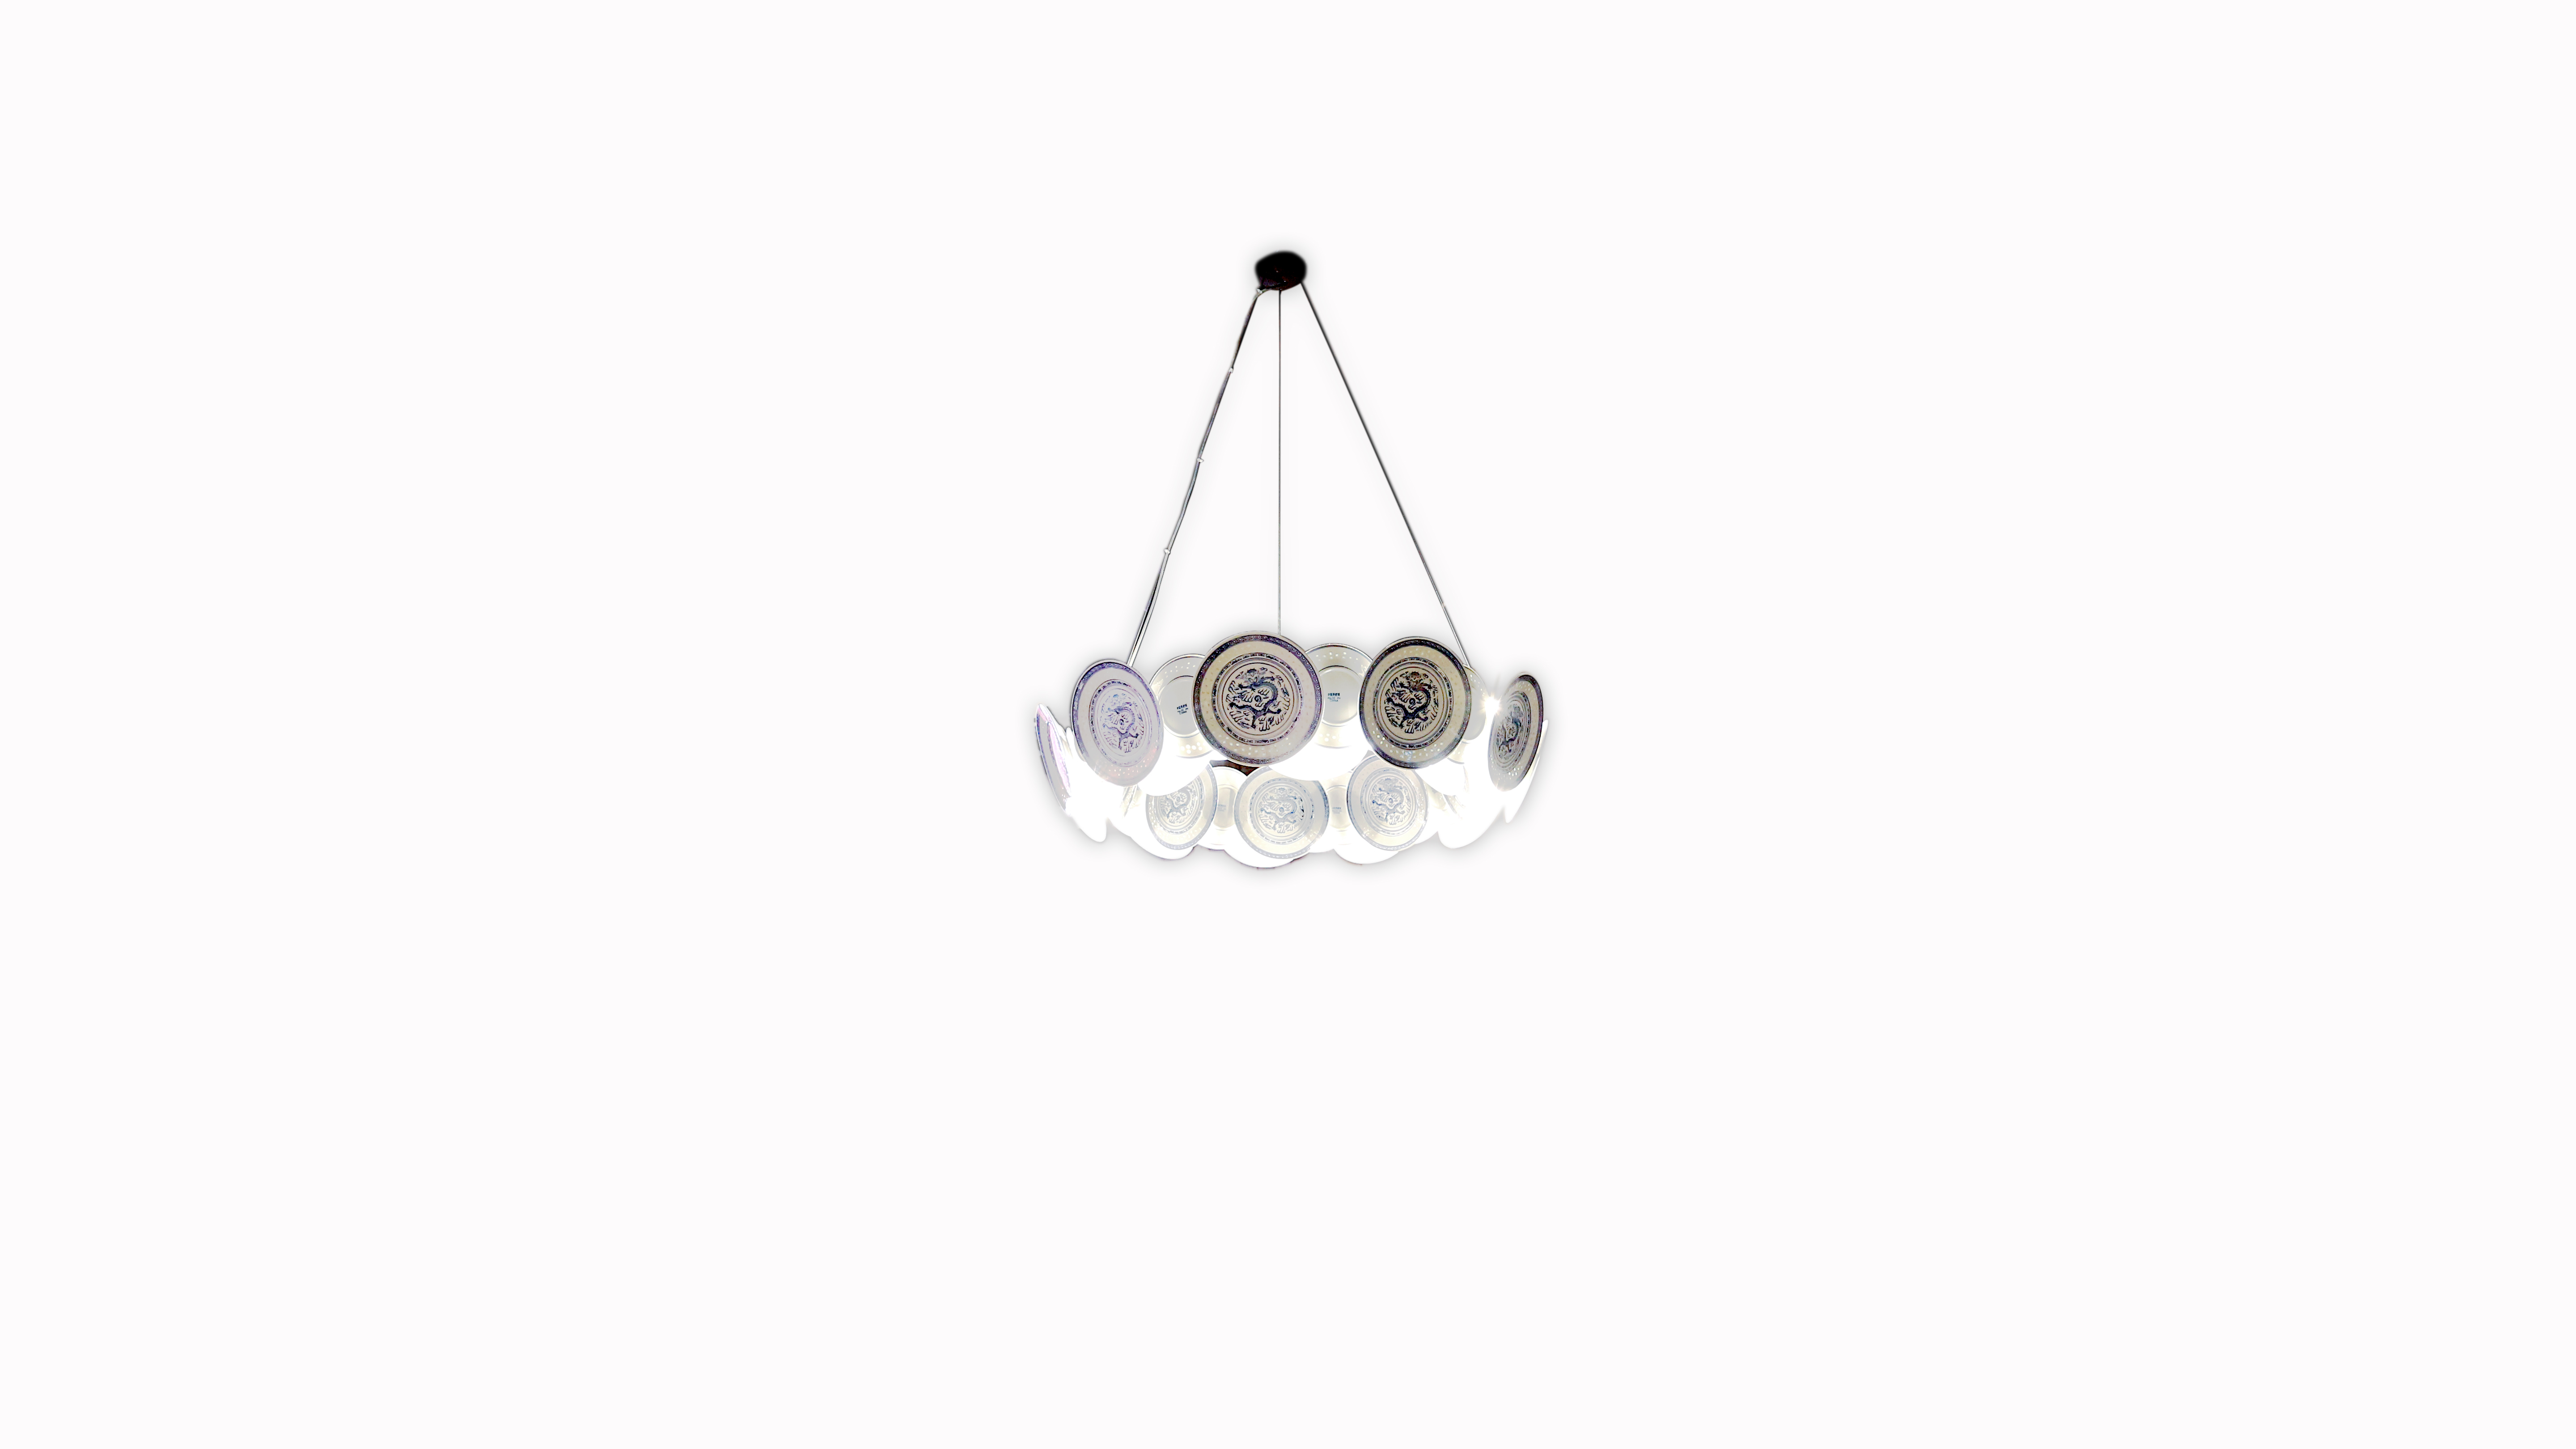 Slider platelet design, made to order chandelier